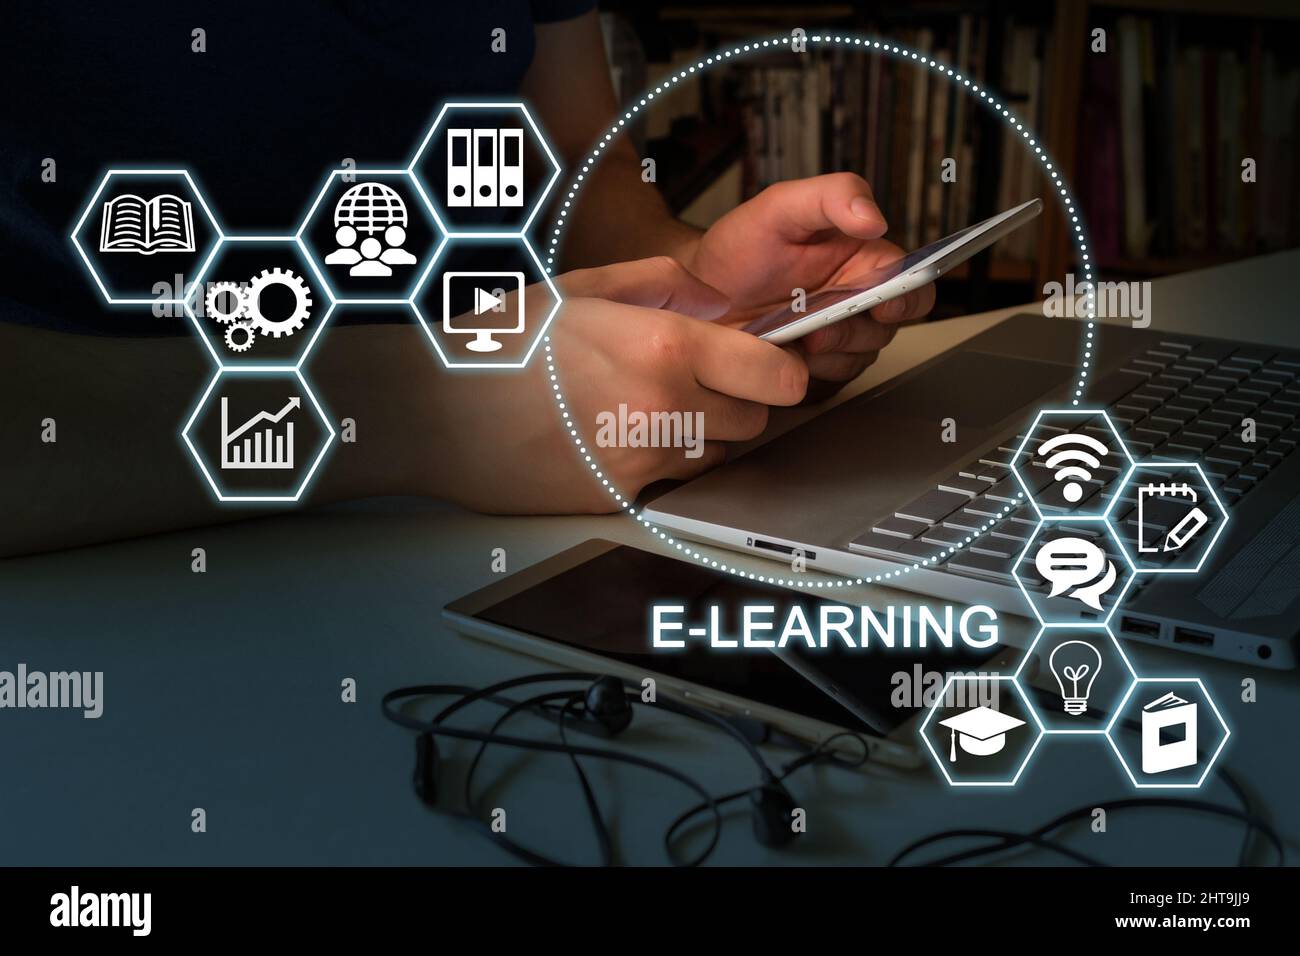 Eine Folie mit einer Marketingpräsentation zu E-Learning-Schulungen mit einem Tablet mit menschlichen Händen. Stockfoto